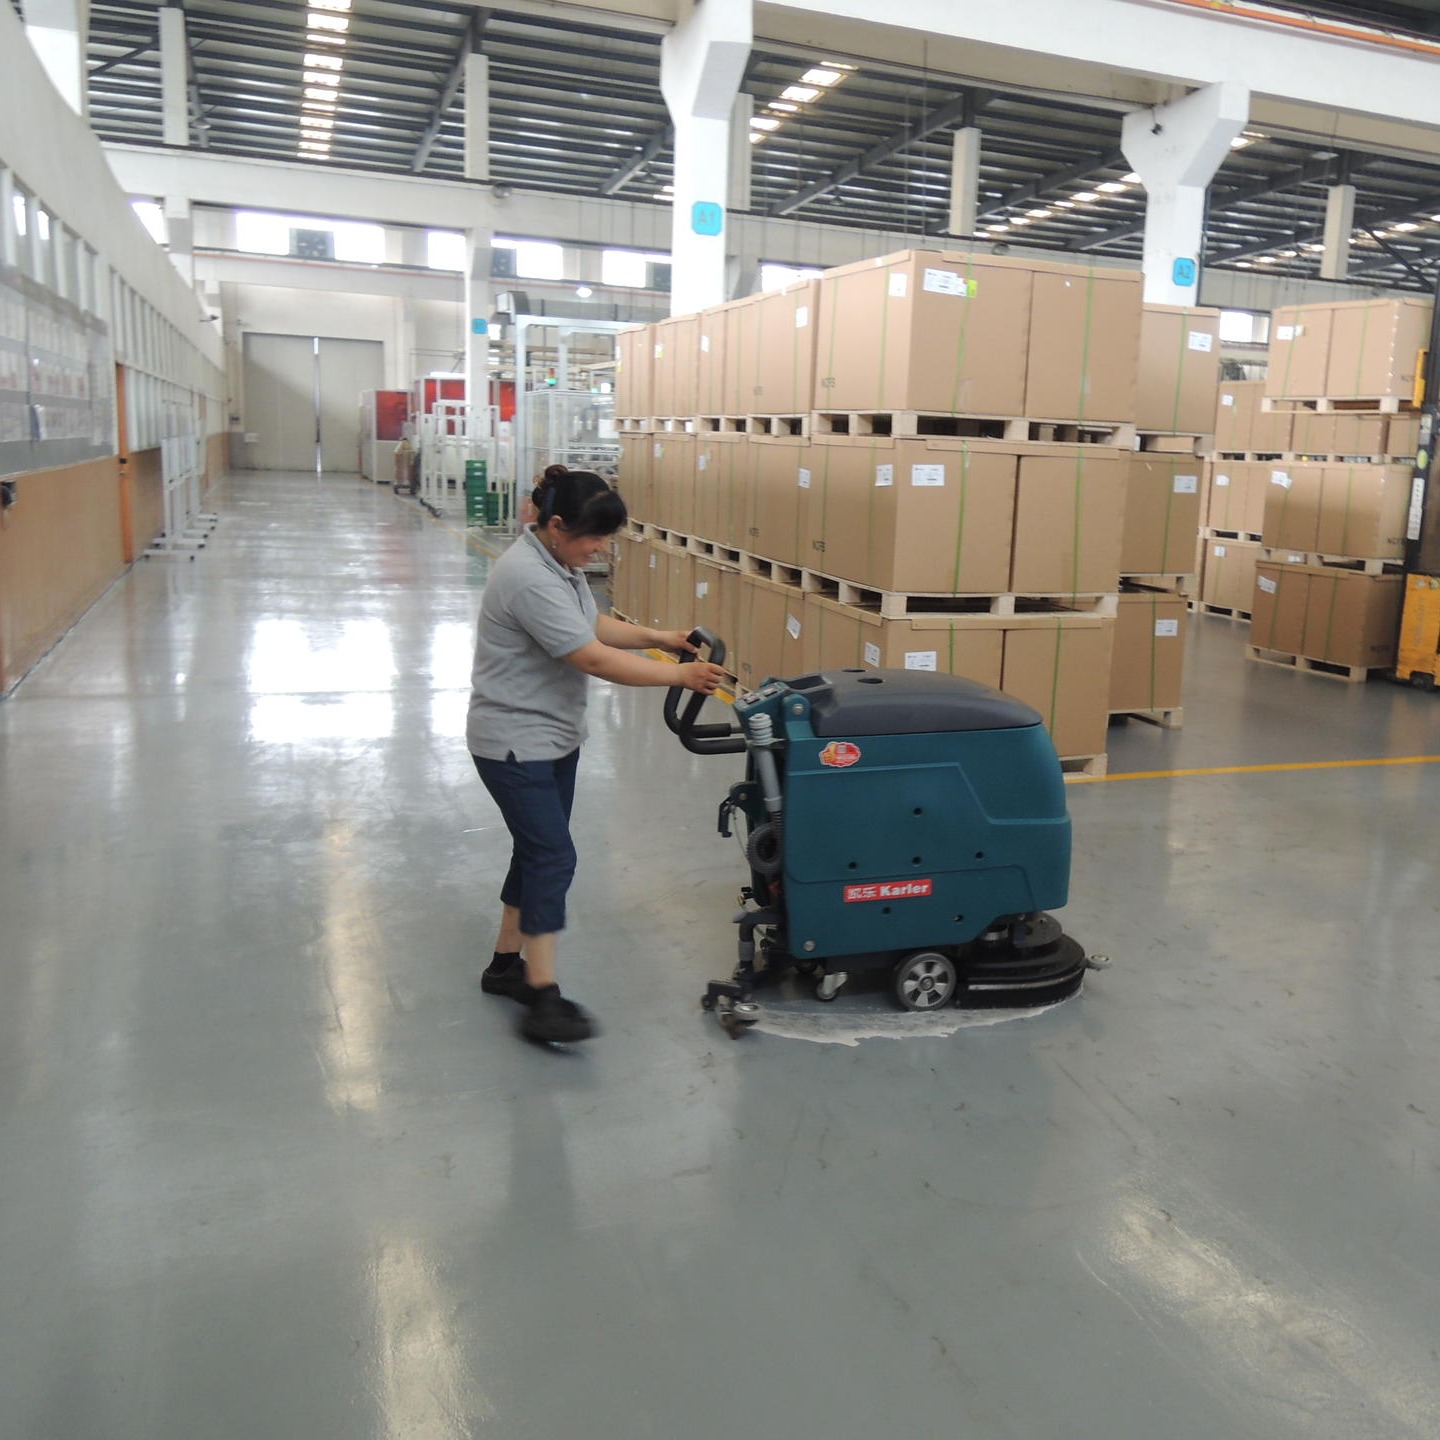 凯叻手推式全自动洗地机KL520 电瓶式洗地机  广东惠州市医院超市商场物业工厂擦地机